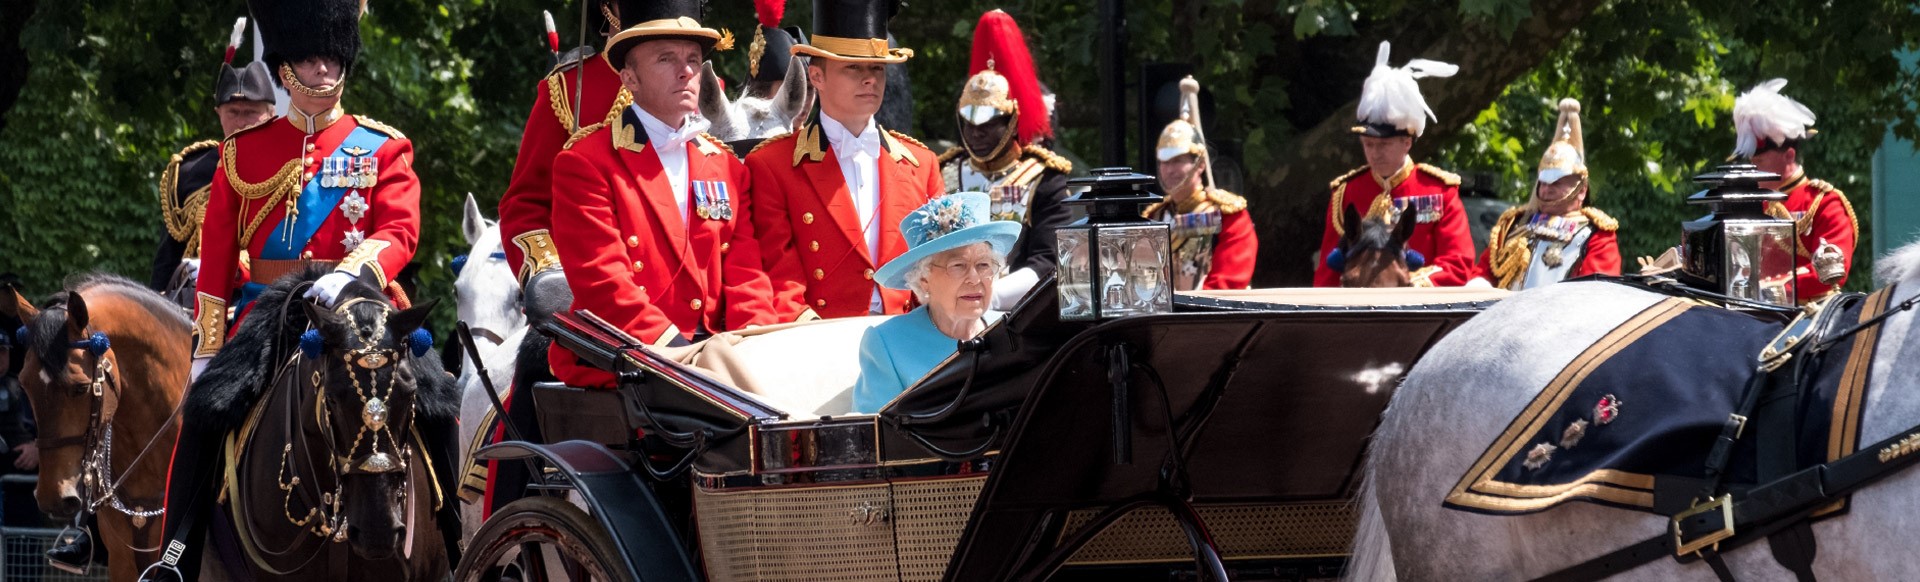 Königin Elizabeth II fährt in einer offenen Kutsche, die von Pferden gezogen wird entlang der Mall, auf Ihrem Weg vom Buckingham Palace an einem sonnigen Tag.